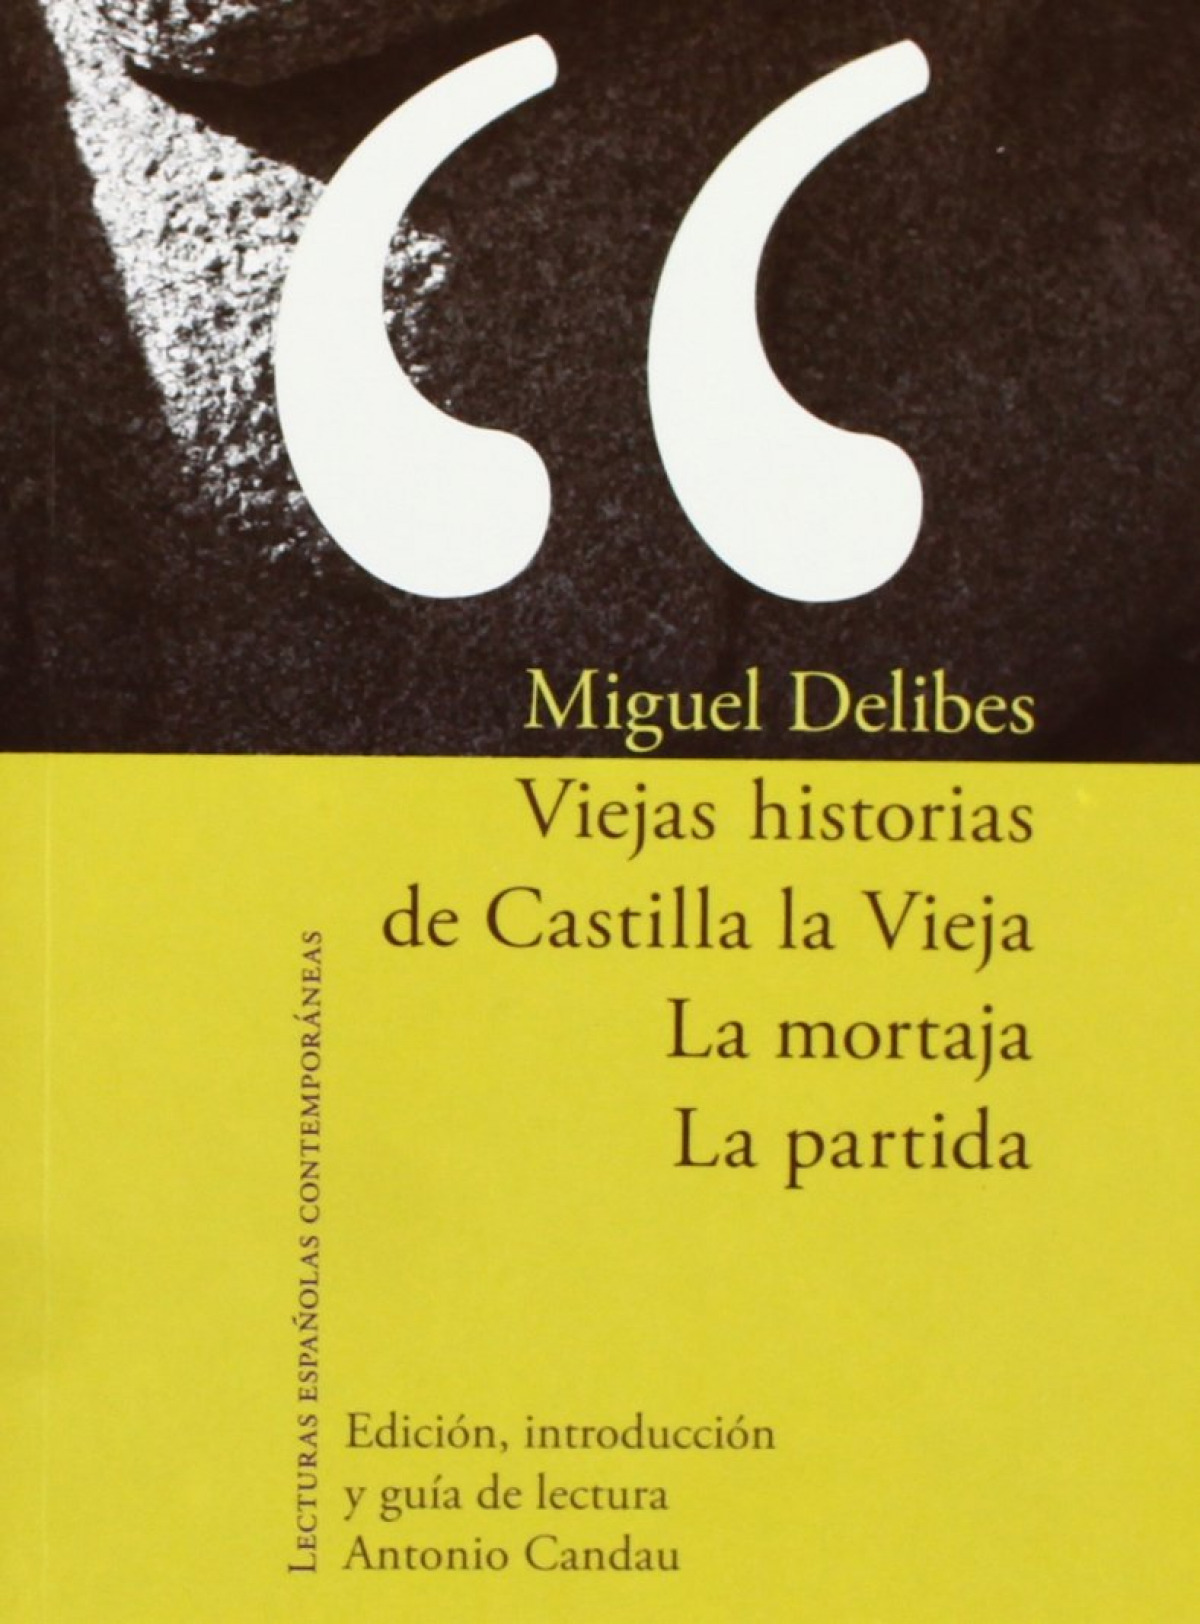 Viejas historias de castilla la vieja - Delibes, Miguel